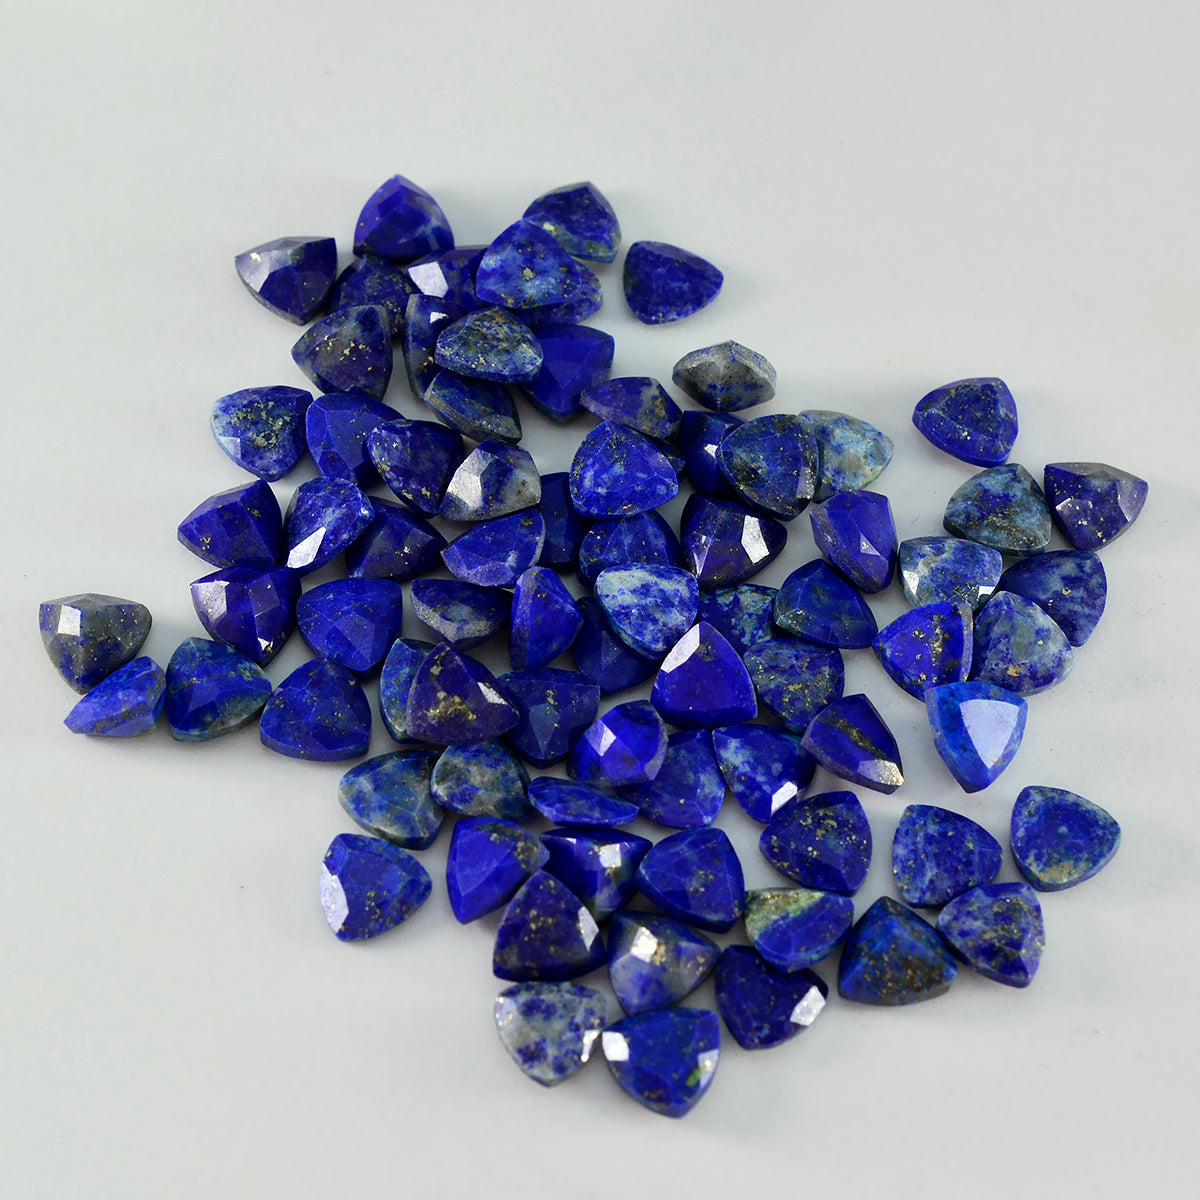 Riyogems 1 pièce de lapis-lazuli bleu naturel à facettes 5x5mm en forme de trillion, pierre précieuse de superbe qualité